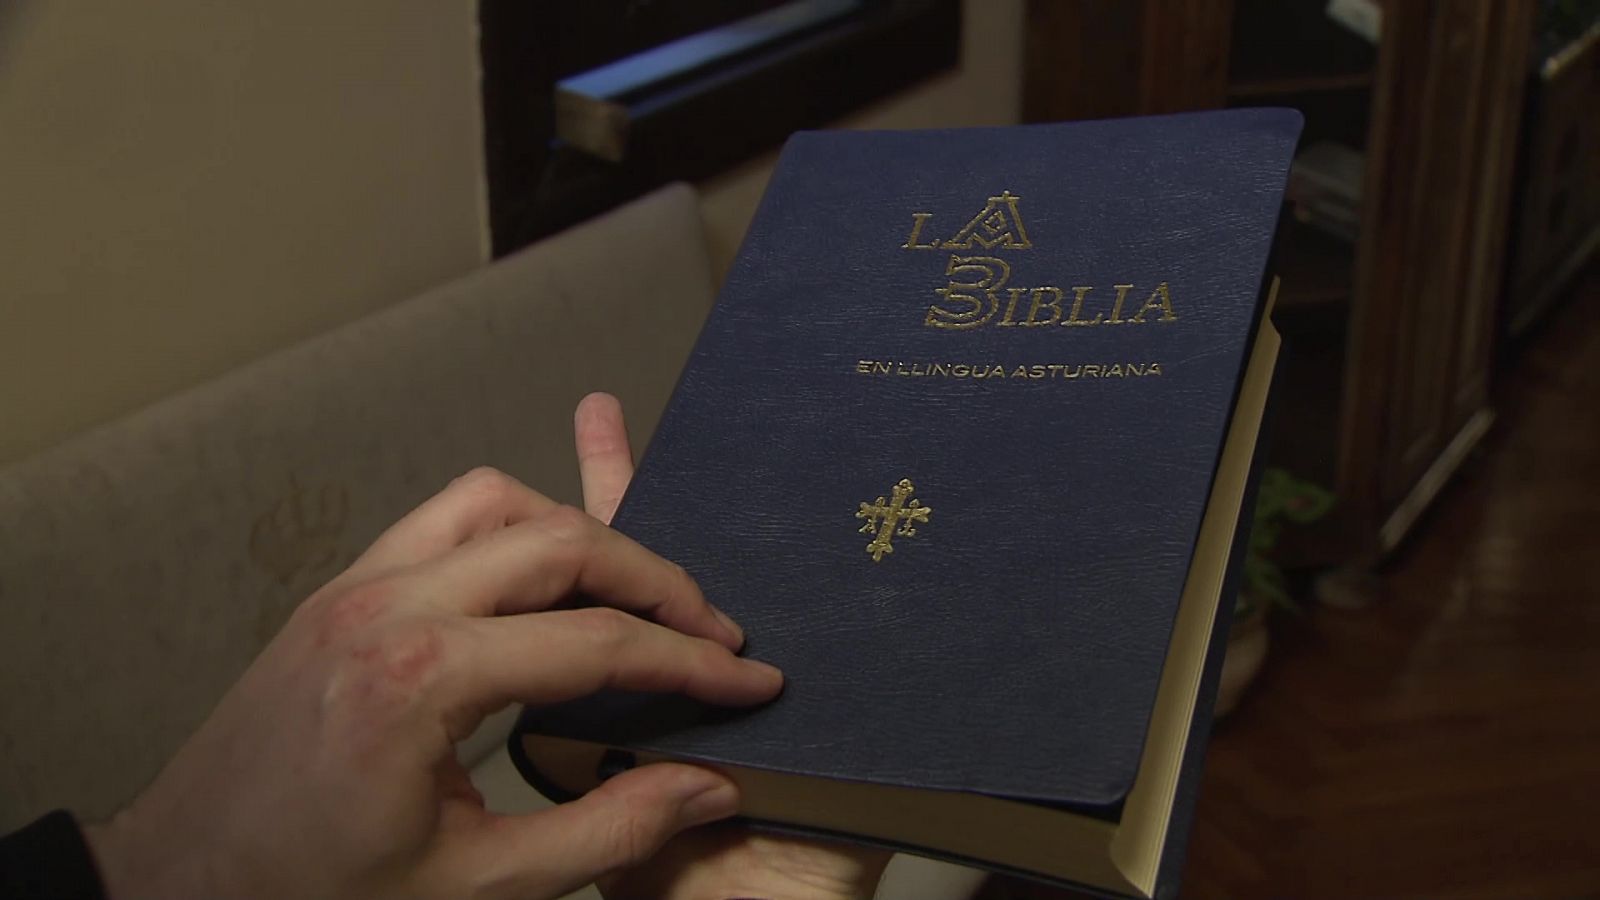 Buenas Noticias TV - La Biblia en llingua asturiana